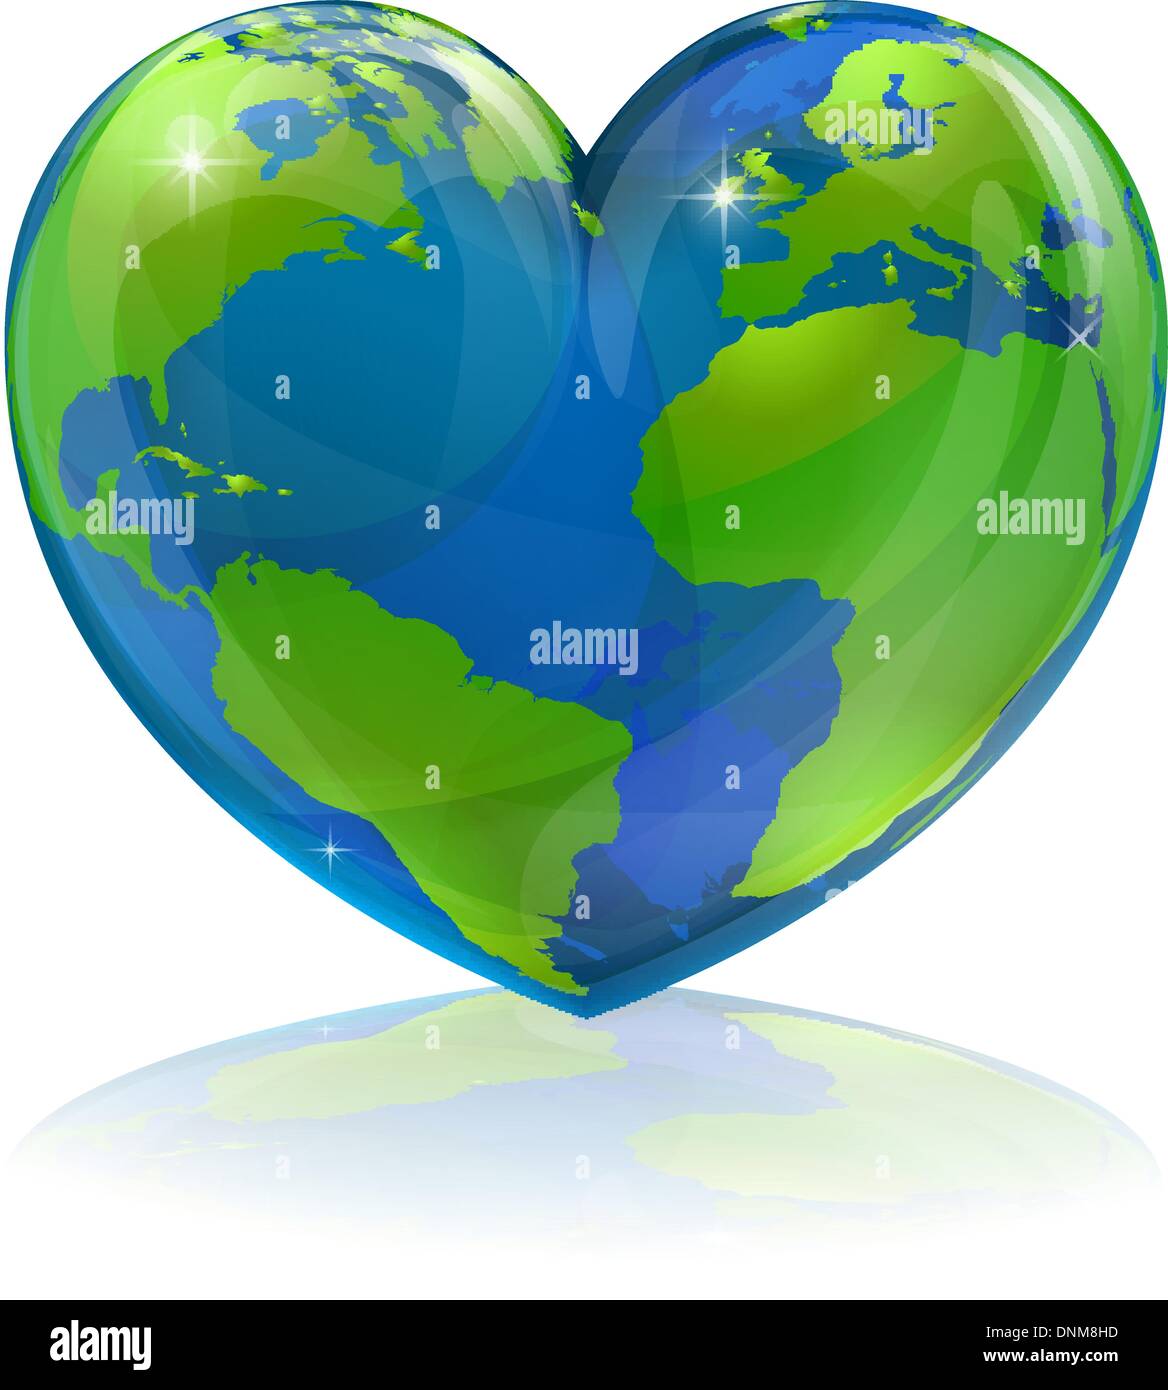 Eine konzeptionelle Darstellung für die Welt, die Welt in der Form eines Herzens Liebe zu lieben. Genutzt werden, für die Umwelt oder Trave Stock Vektor